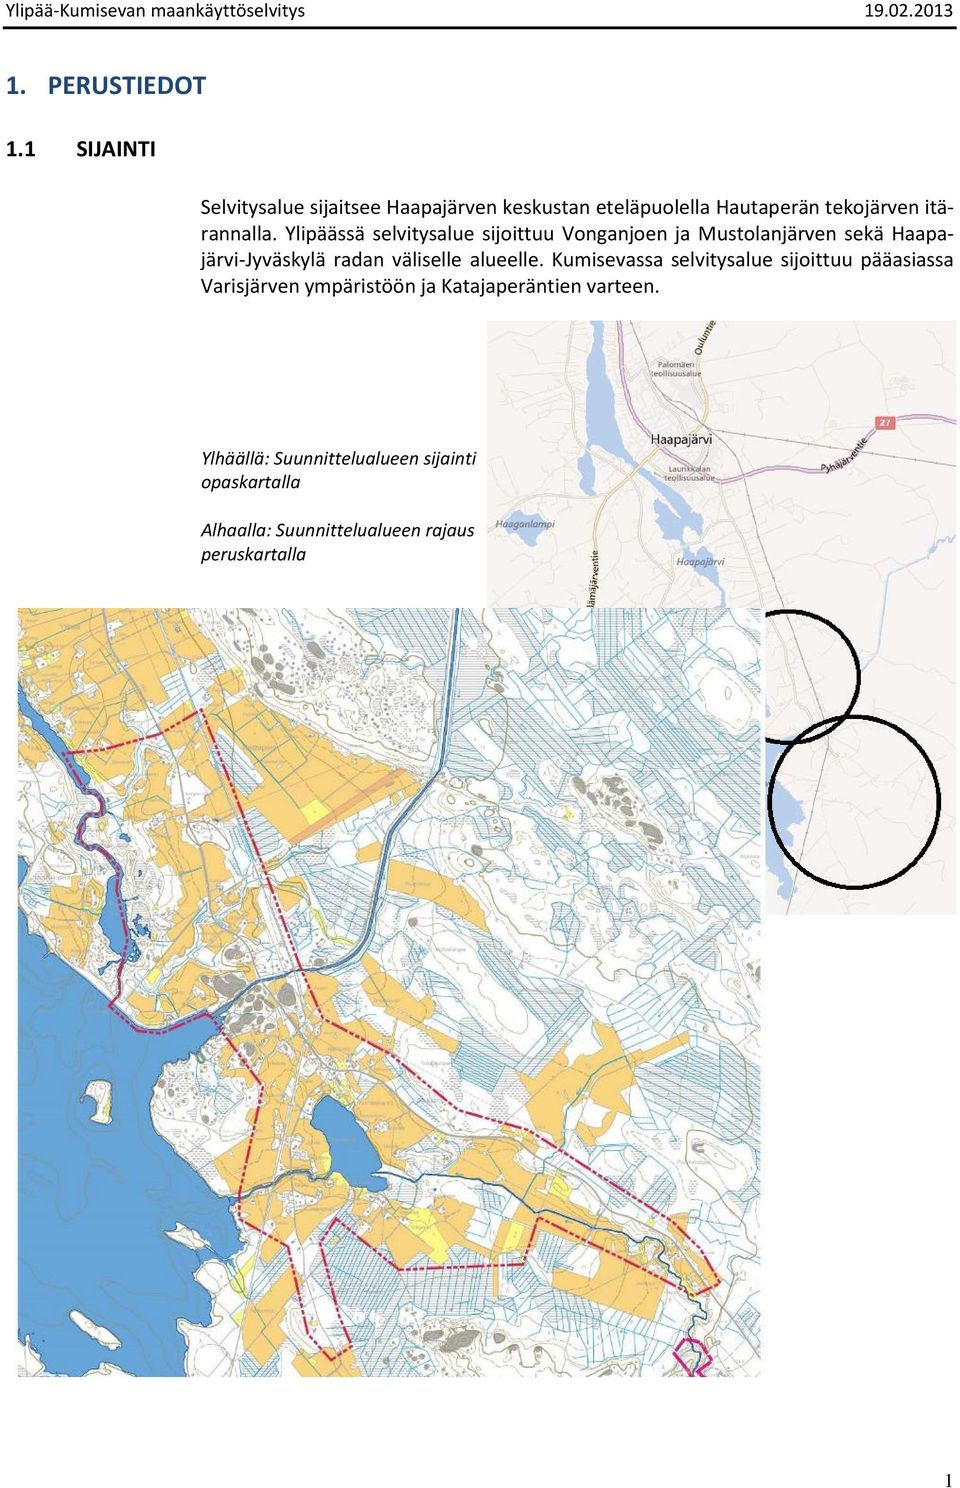 Ylipäässä selvitysalue sijoittuu Vonganjoen ja Mustolanjärven sekä Haapajärvi-Jyväskylä radan väliselle alueelle.